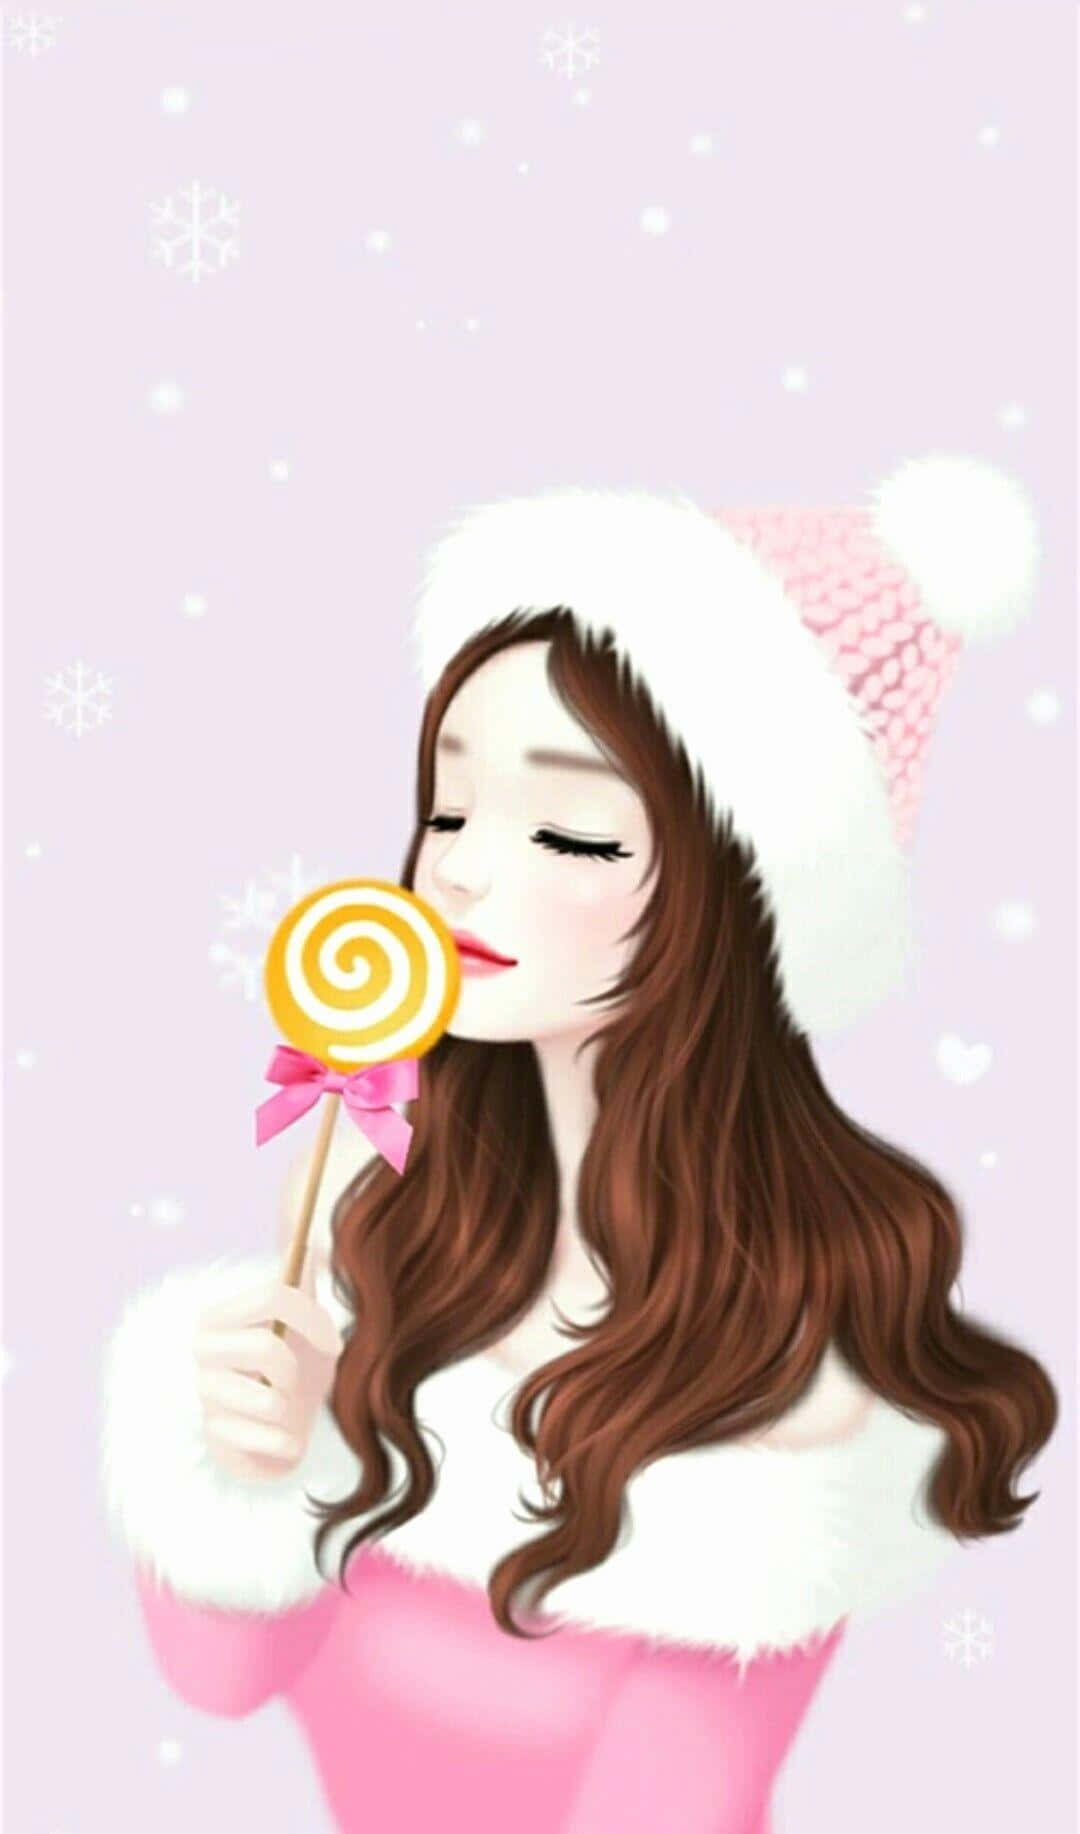 Chicade Anime Coreano Con Atuendo De Invierno En Rosa Y Blanco. Fondo de pantalla